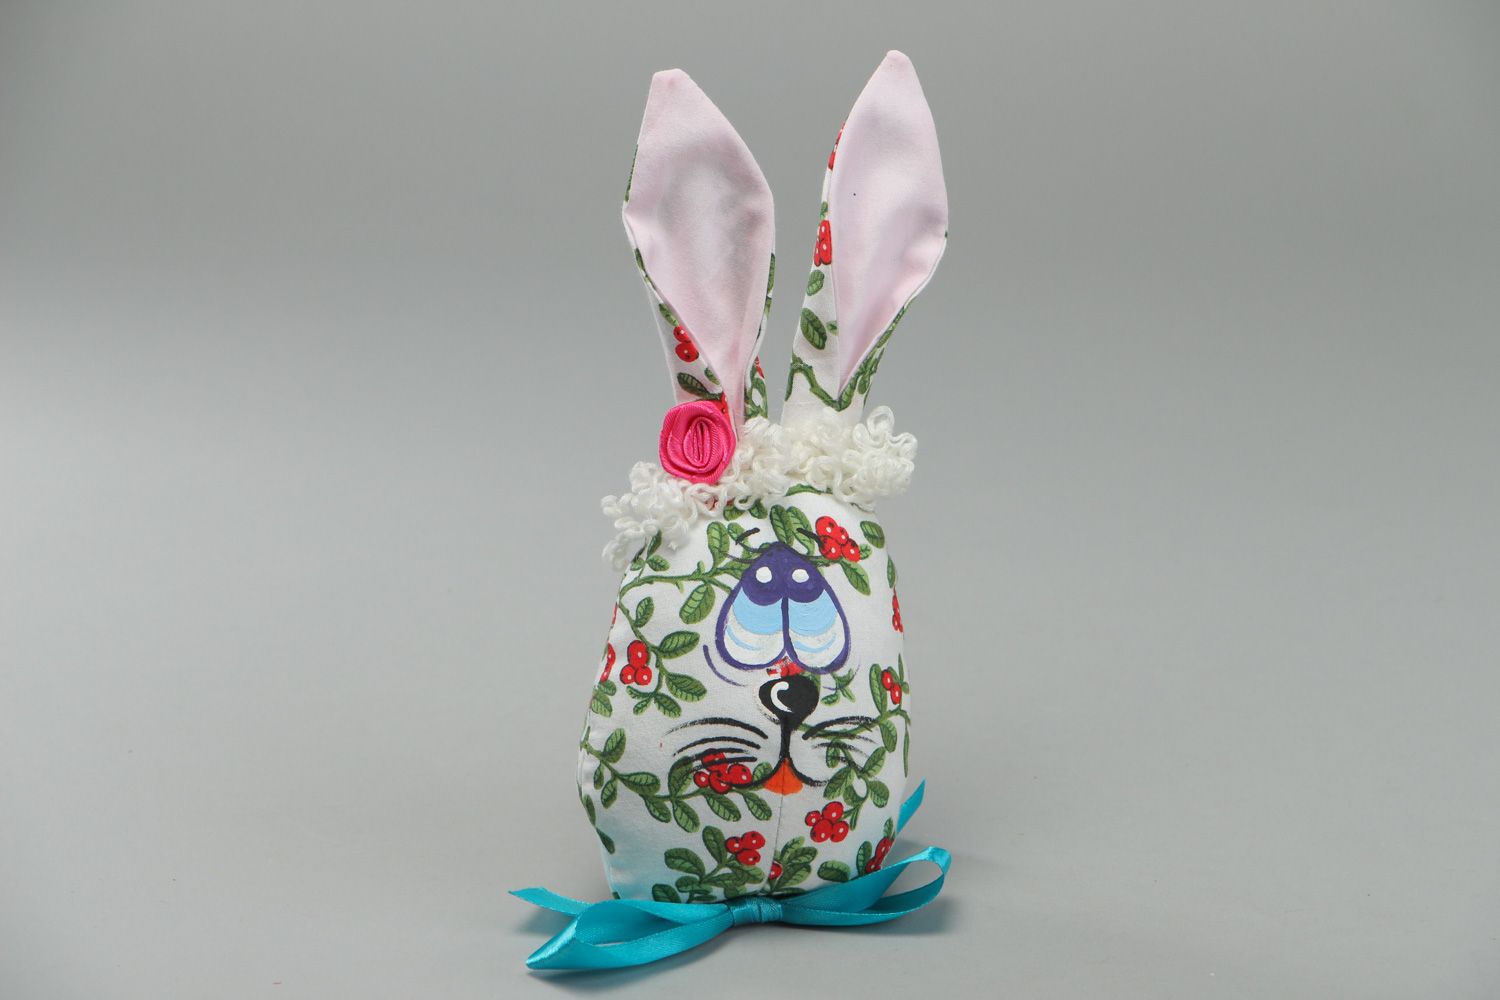 Мягкая игрушка из ткани пошитая вручную Пасхальный кролик фото 1